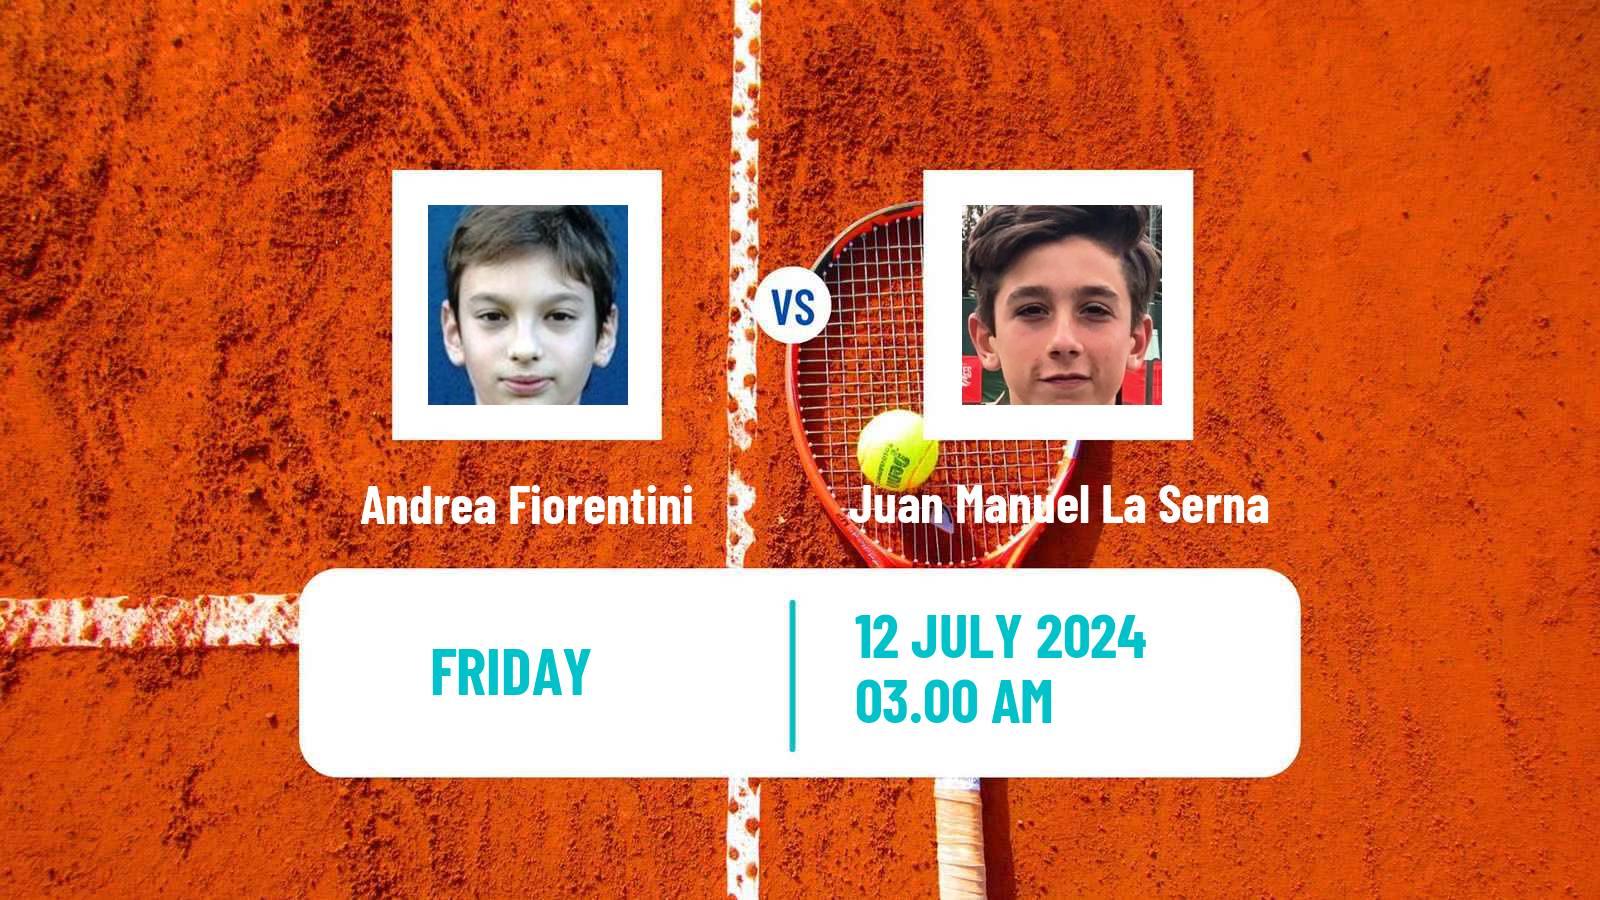 Tennis ITF M15 Kursumlijska Banja 10 Men Andrea Fiorentini - Juan Manuel La Serna